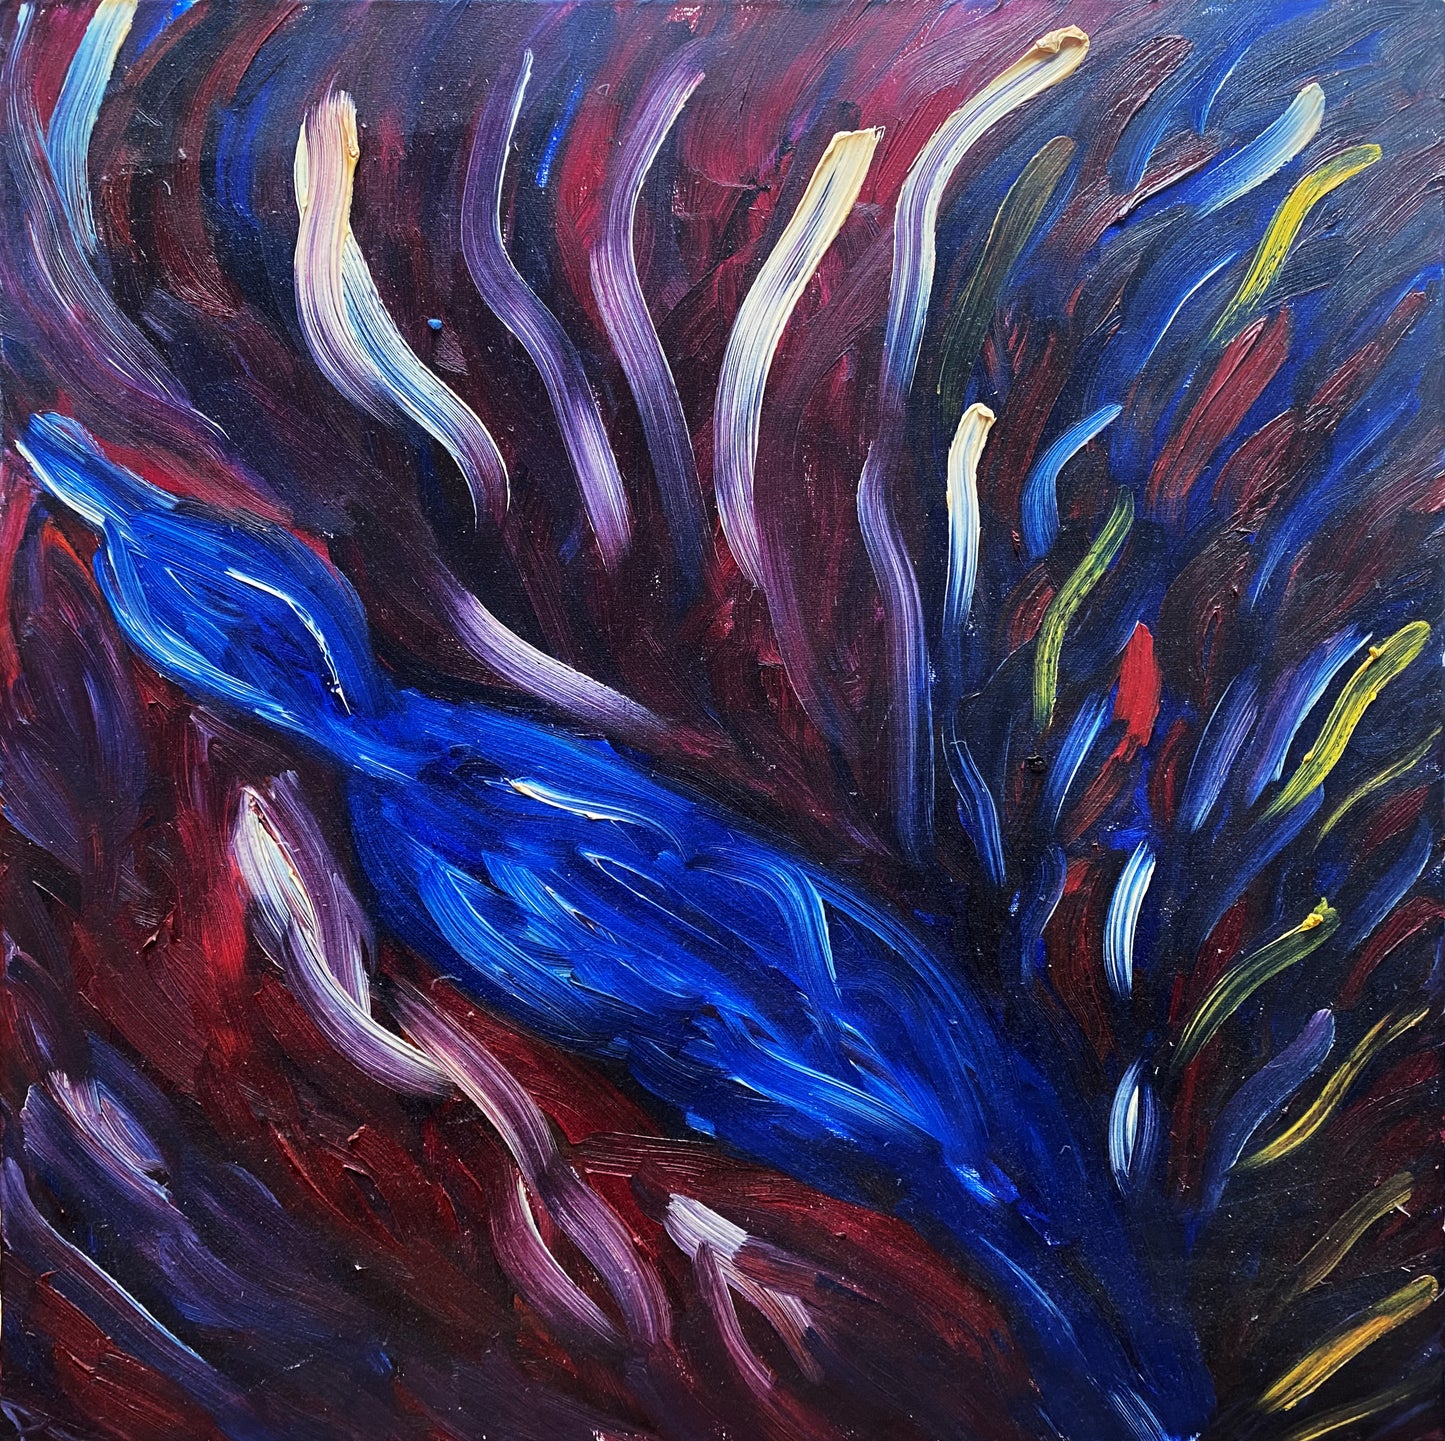 THE BIRD, 23.6 x 23.6 in